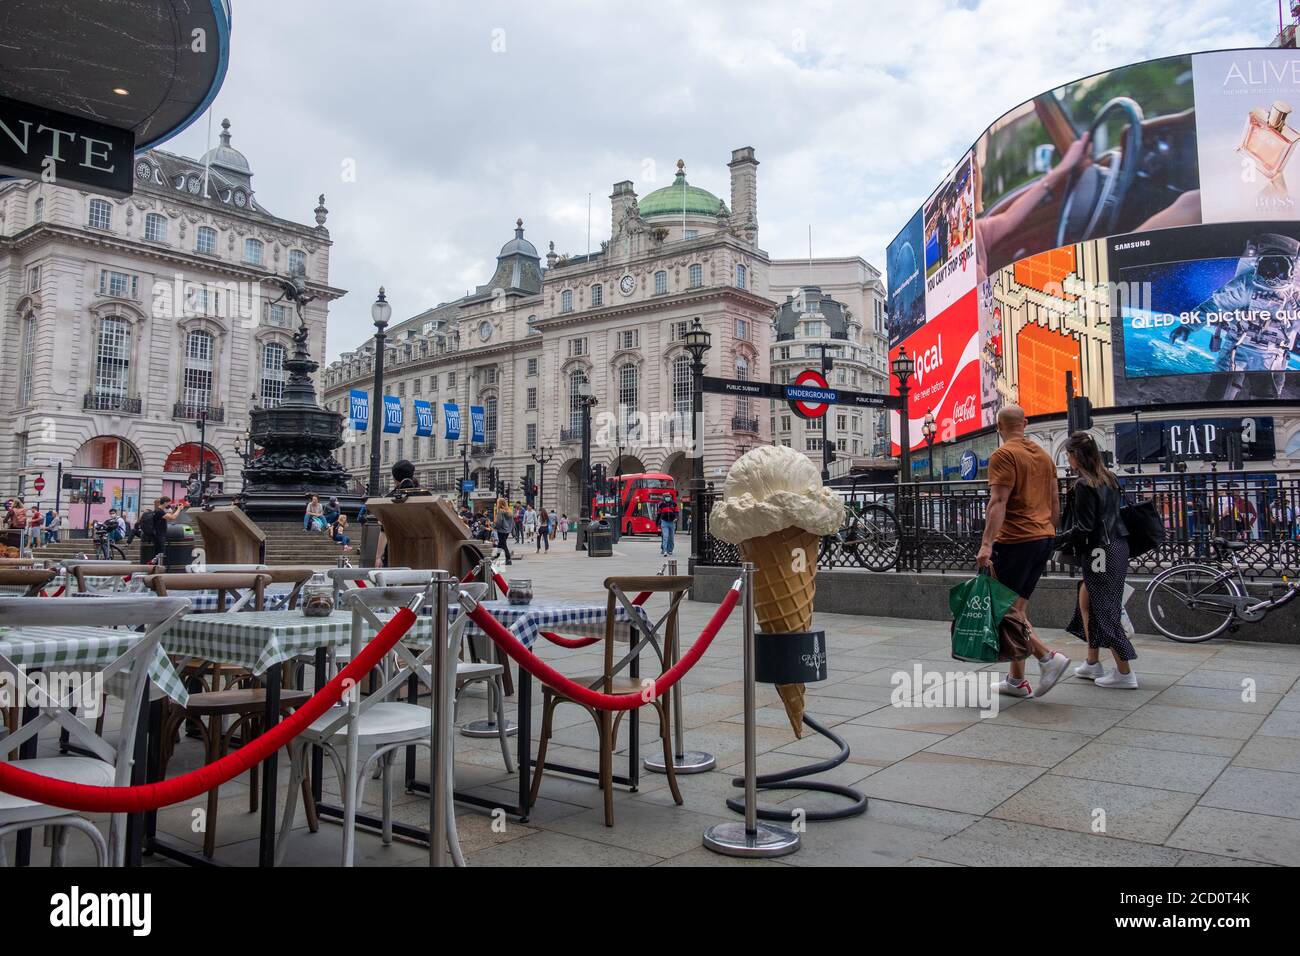 London - August 2020: Ruhige Londoner Straßenszene am Piccadilly Circus, fast leer wegen der Auswirkungen des Coronavirus Stockfoto